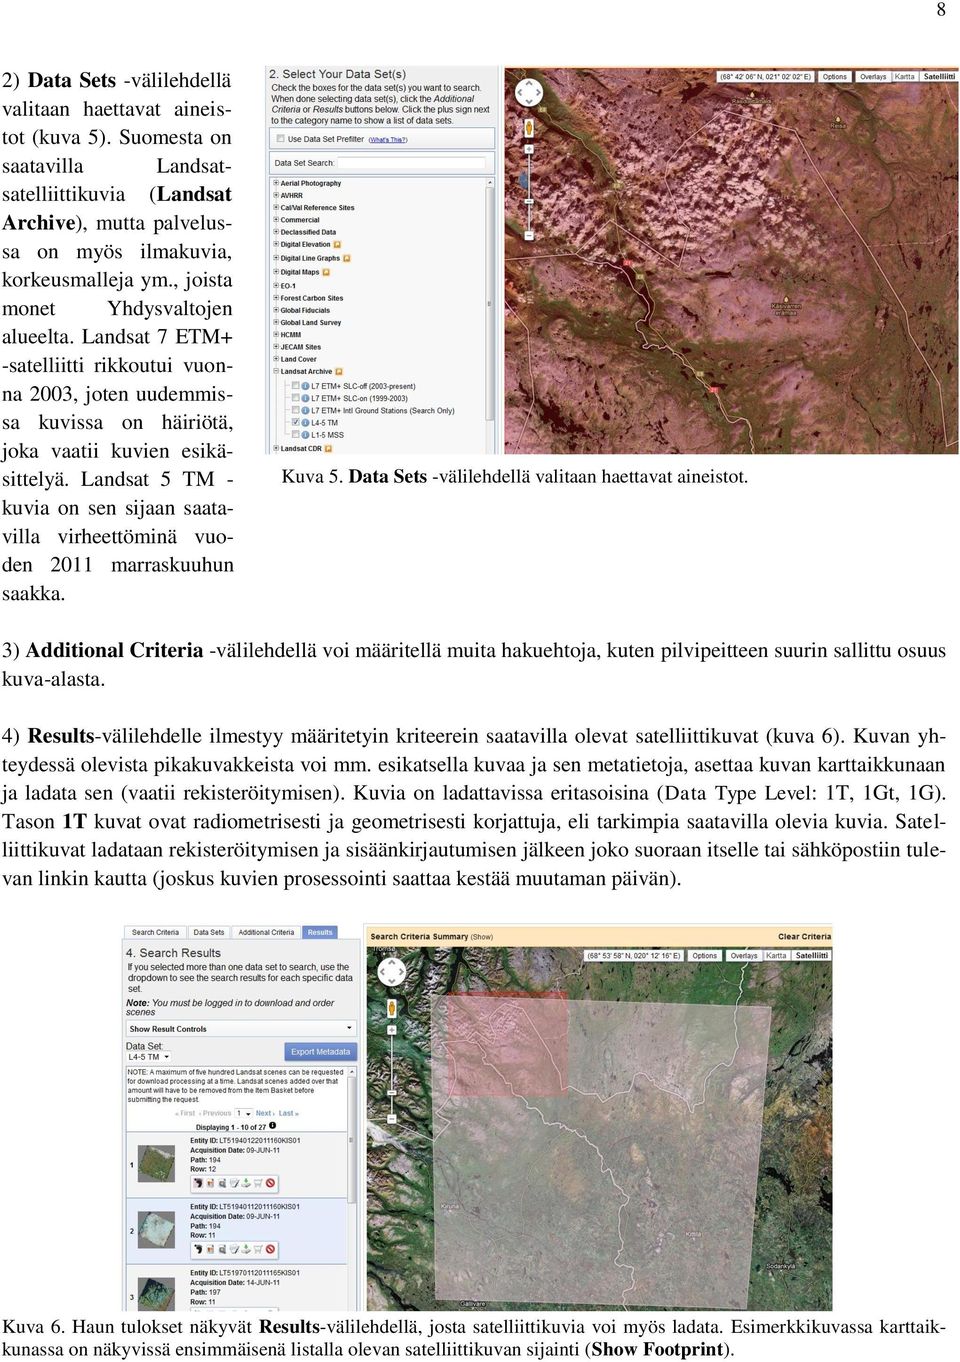 Landsat 5 TM - kuvia on sen sijaan saatavilla virheettöminä vuoden 2011 marraskuuhun saakka. Kuva 5. Data Sets -välilehdellä valitaan haettavat aineistot.